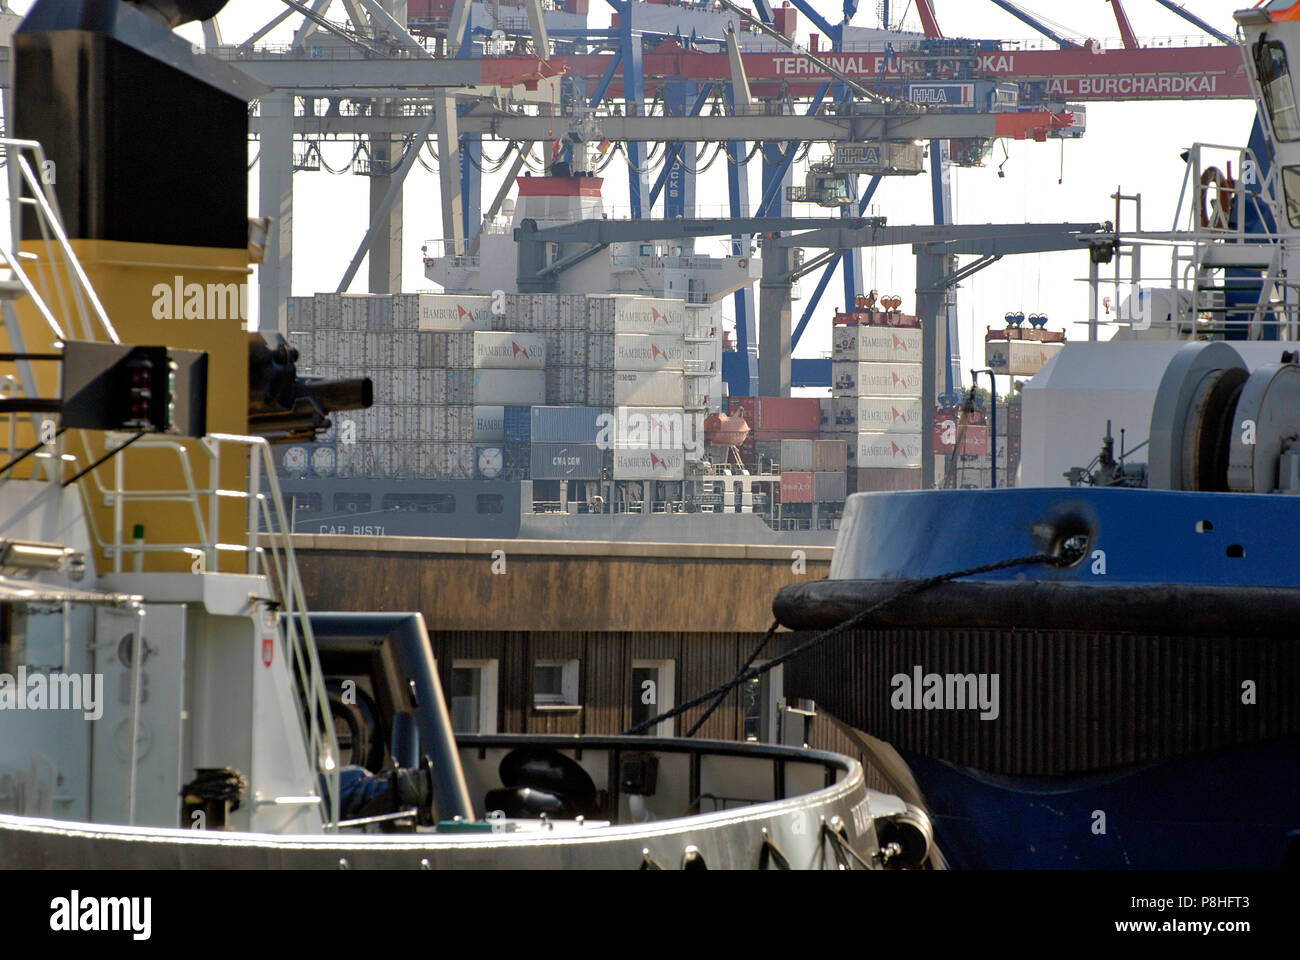 Blick auf das Container-Terminal Burchardkai im Hamburger Hafen. Container der Reederei Hamburg Sued warten aufgestapelt auf dem Container-Schiff Cap  Stock Photo